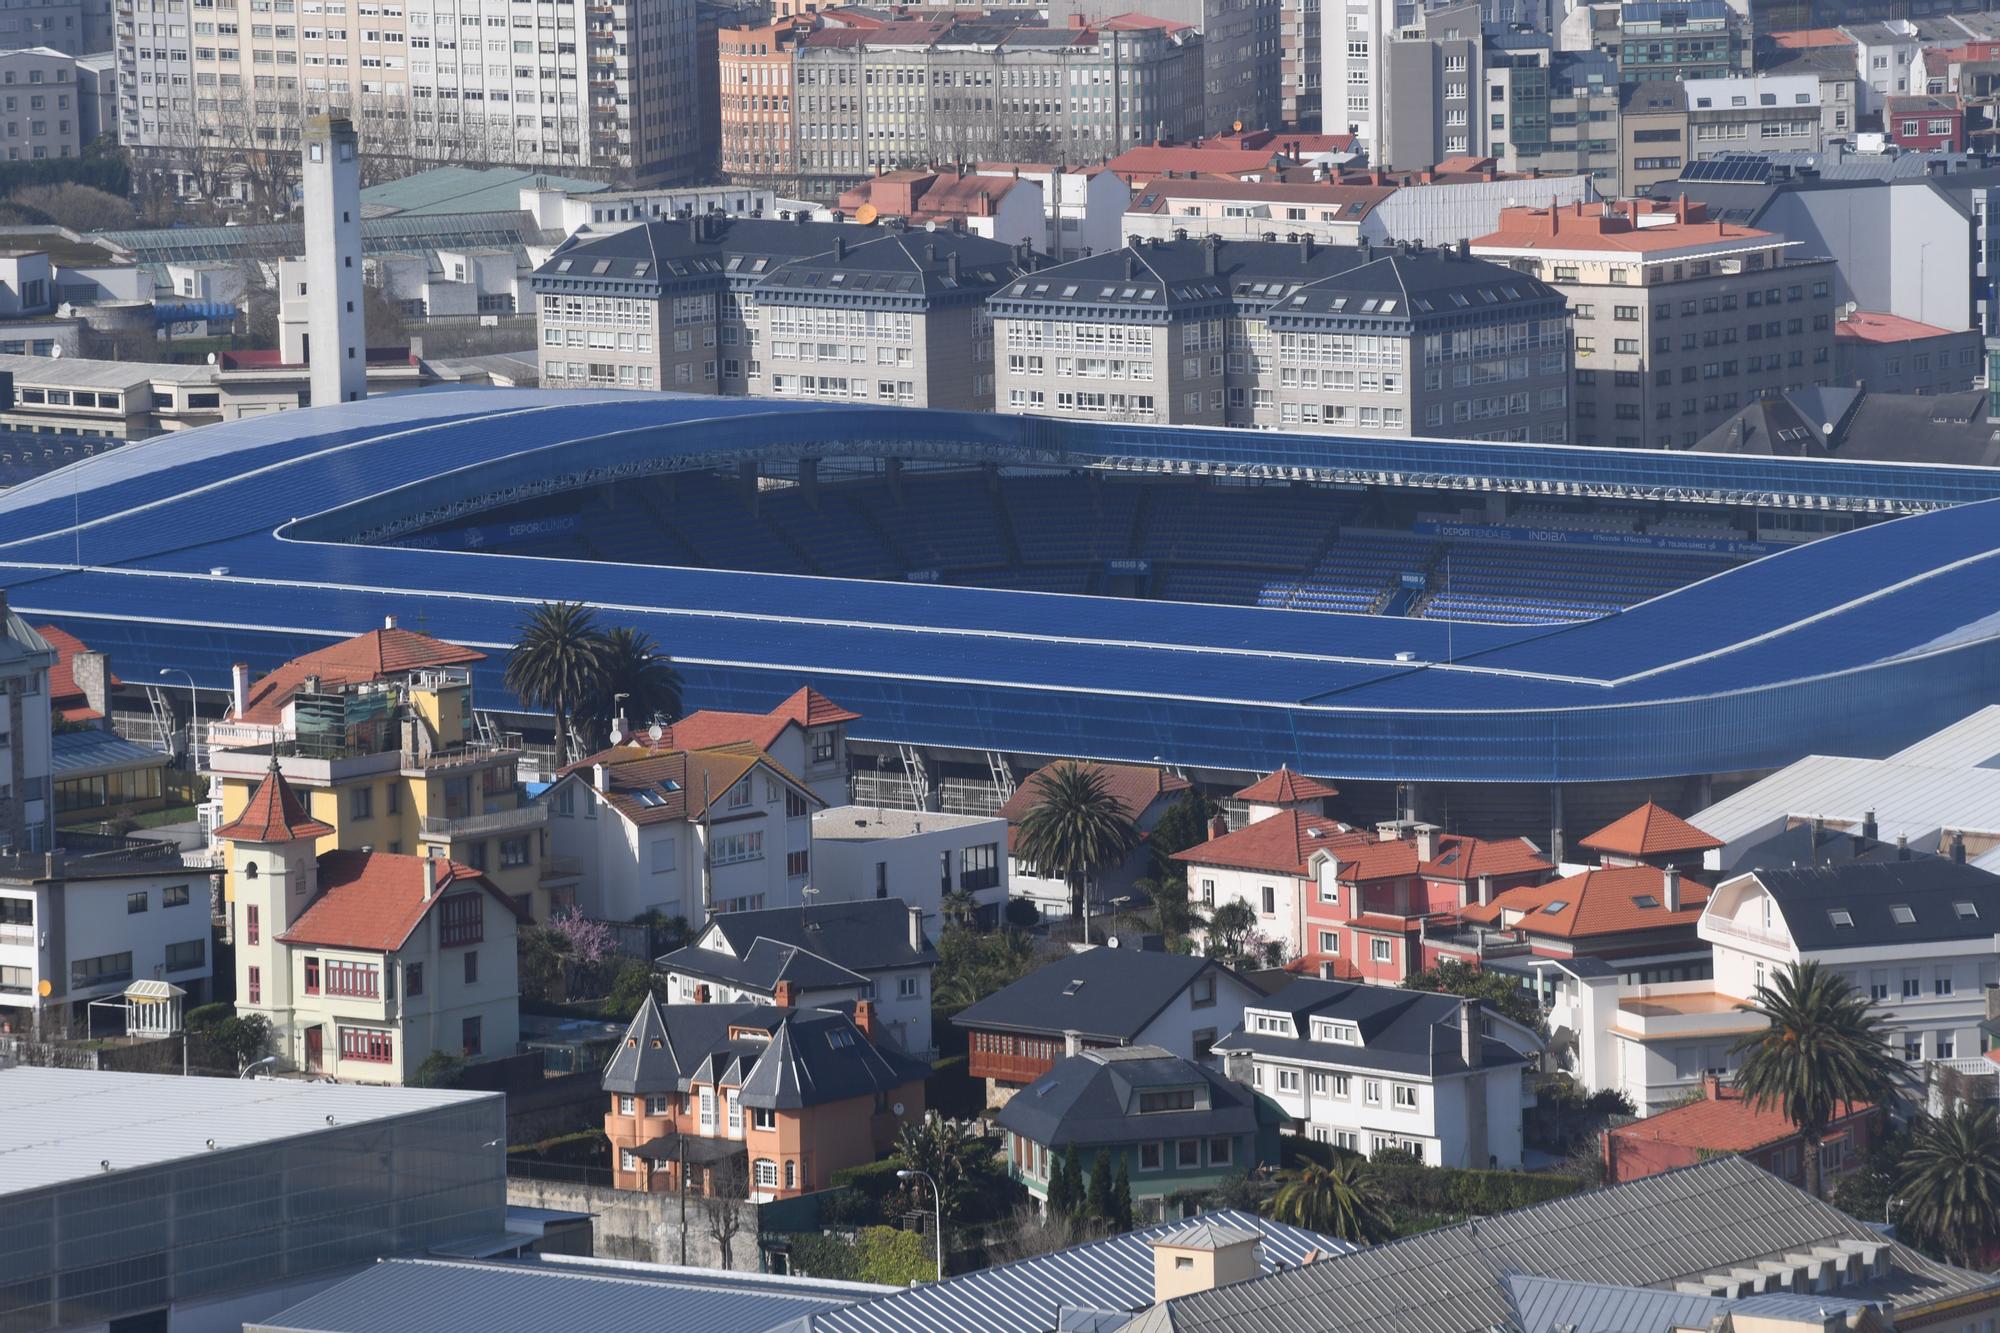 El estadio de Riazor aspira a ser sede del Mundial de fútbol 2030